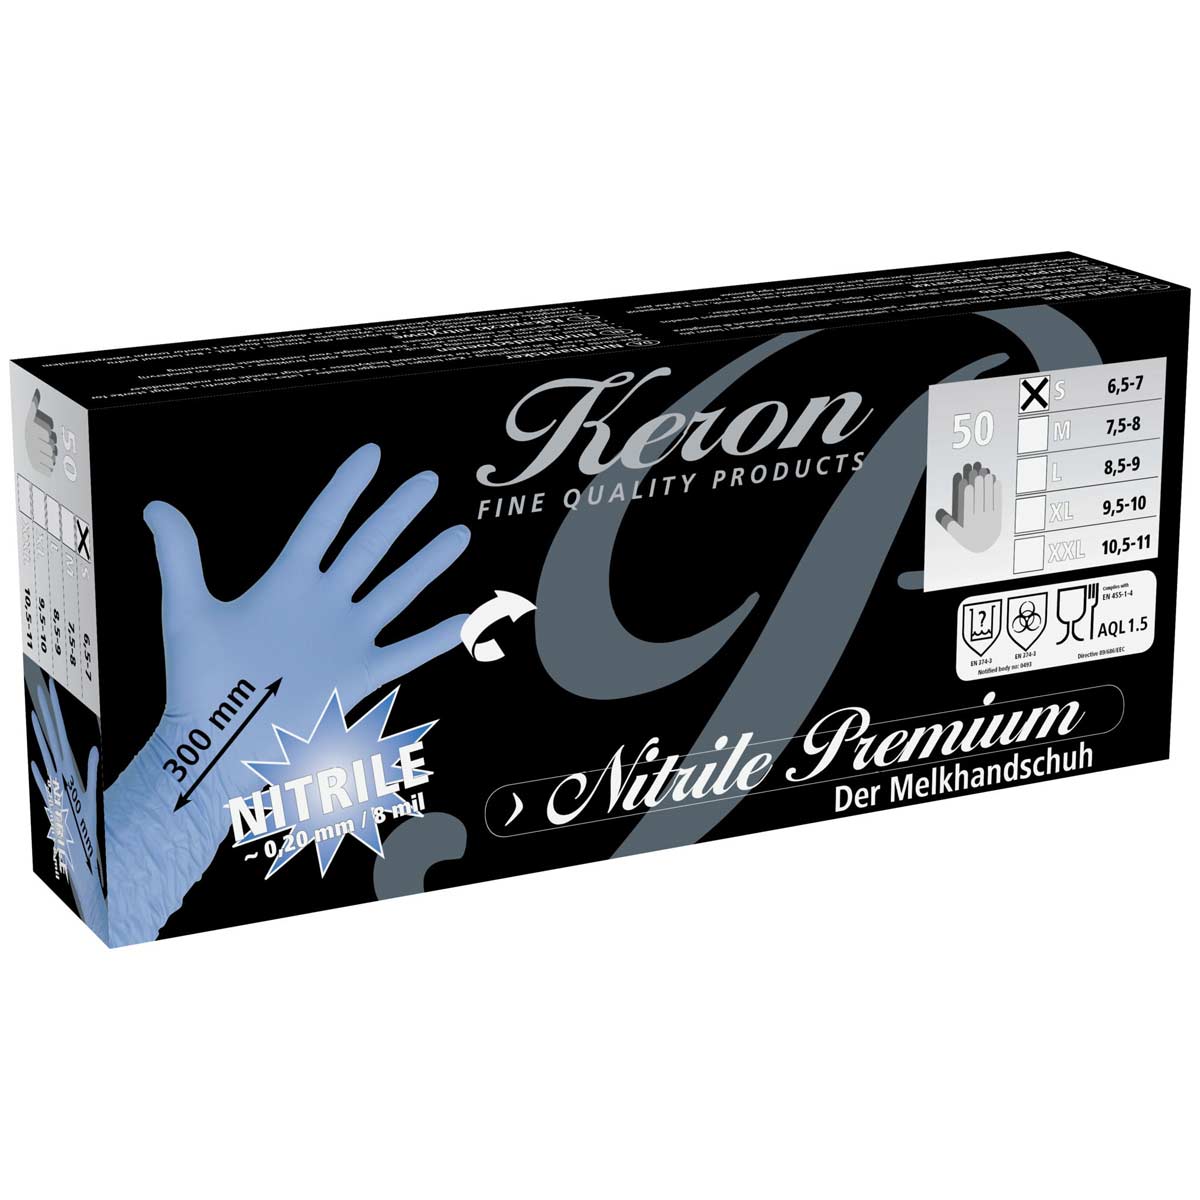 50x Keron mănuși de unică folosință din nitril Premium M